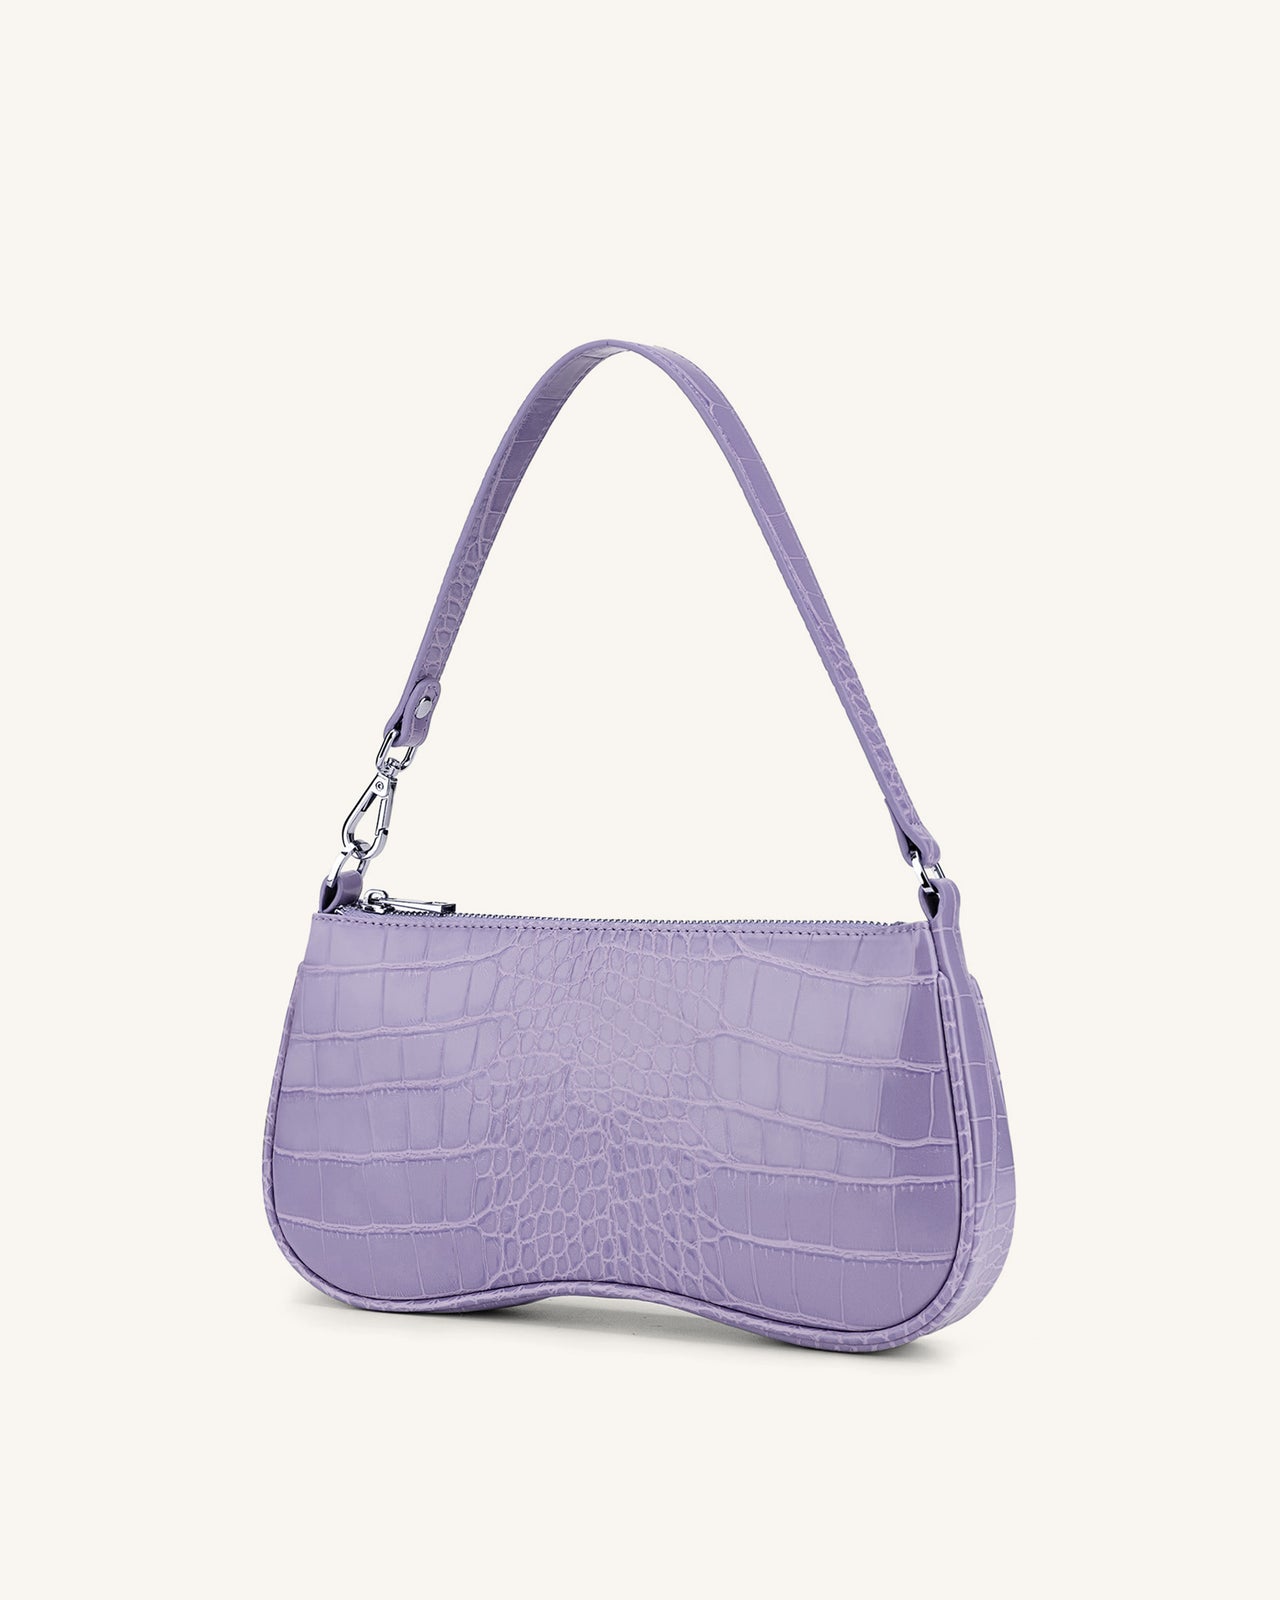 Jual JW PEI gabbi bag - purple - Jakarta Utara - Crownie_shop